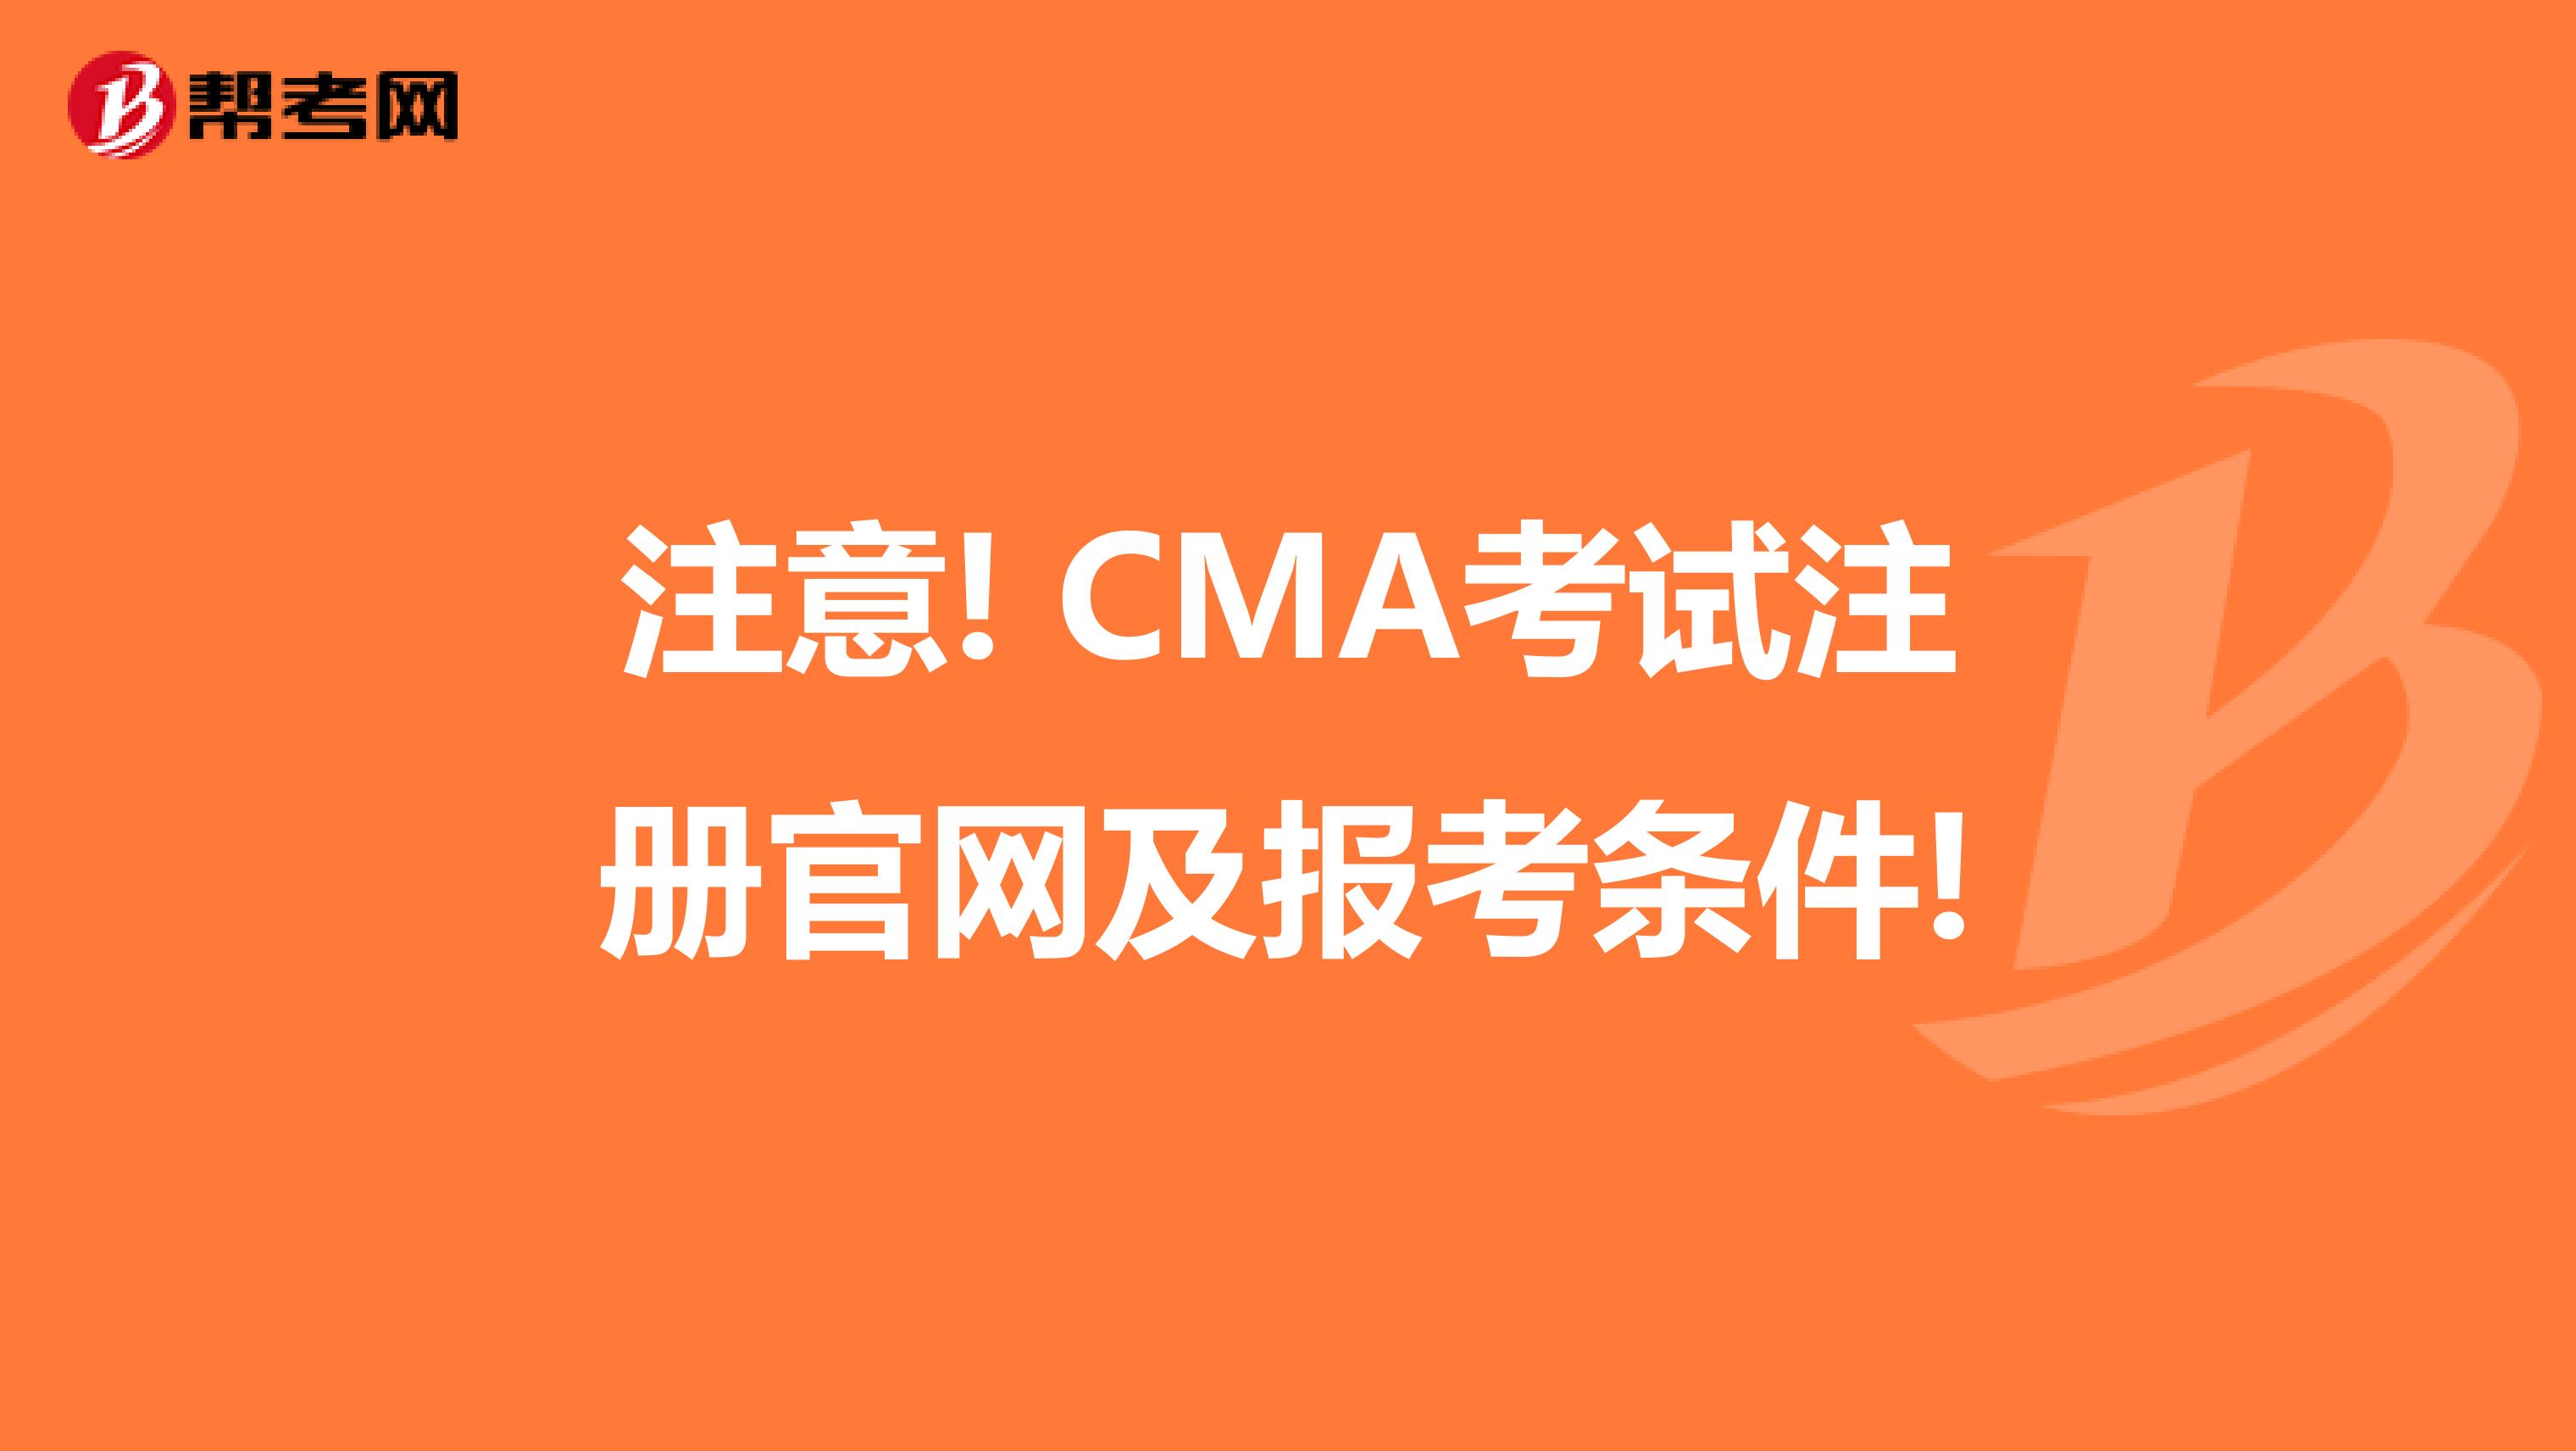 注意! CMA考试注册官网及报考条件!